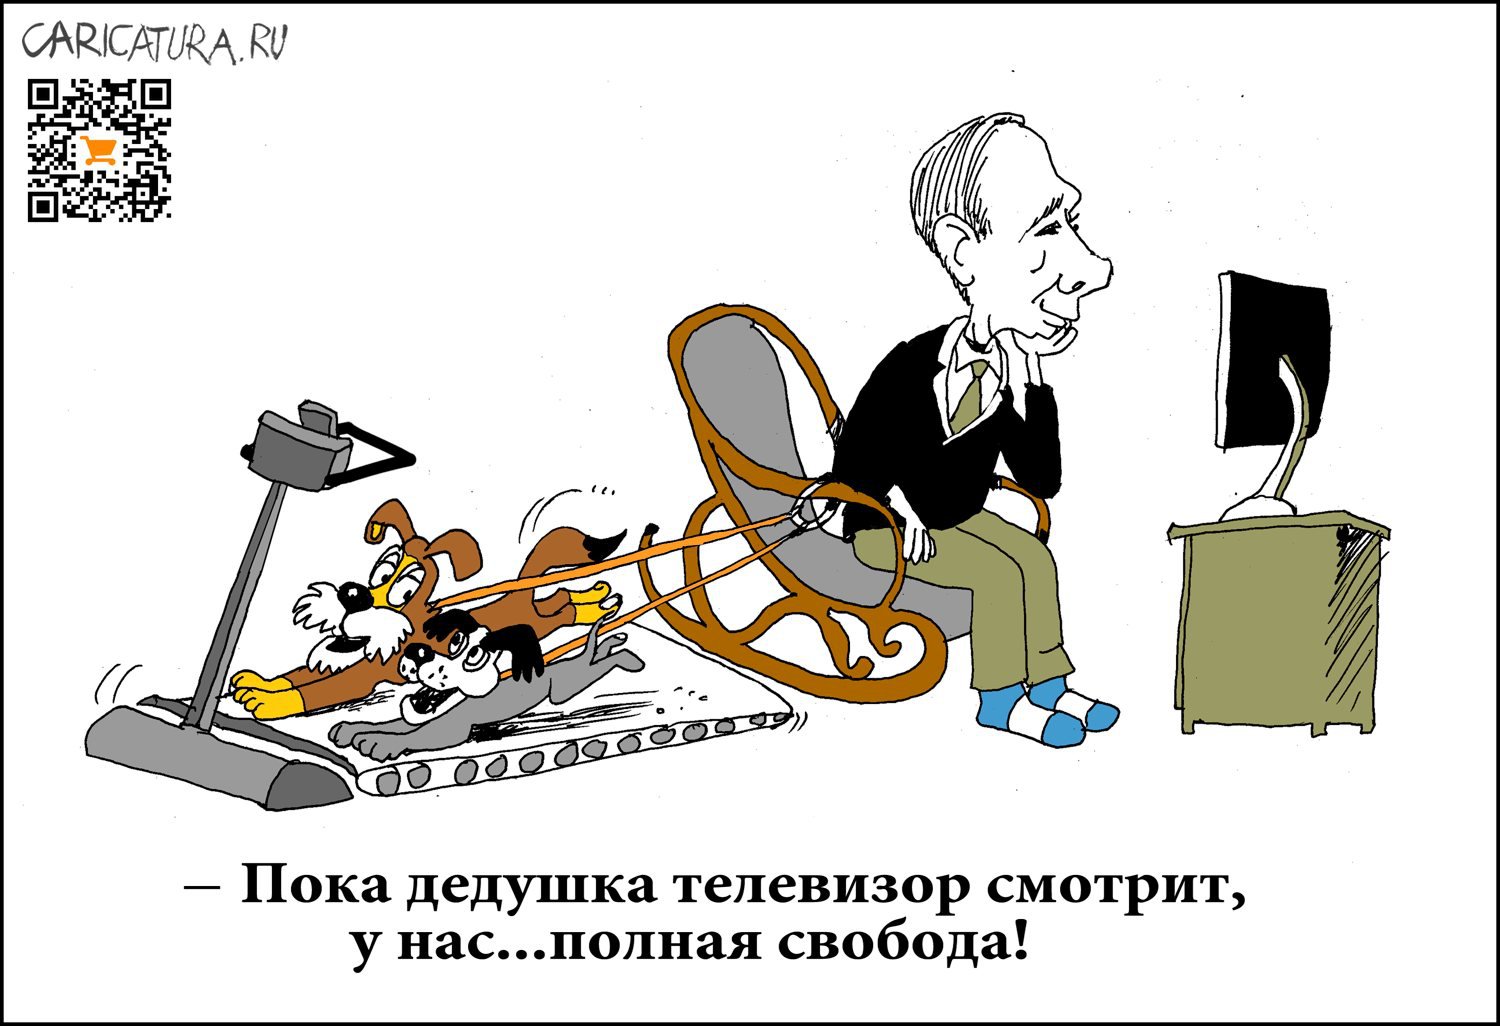 Карикатура "Свобода!", Александр Уваров